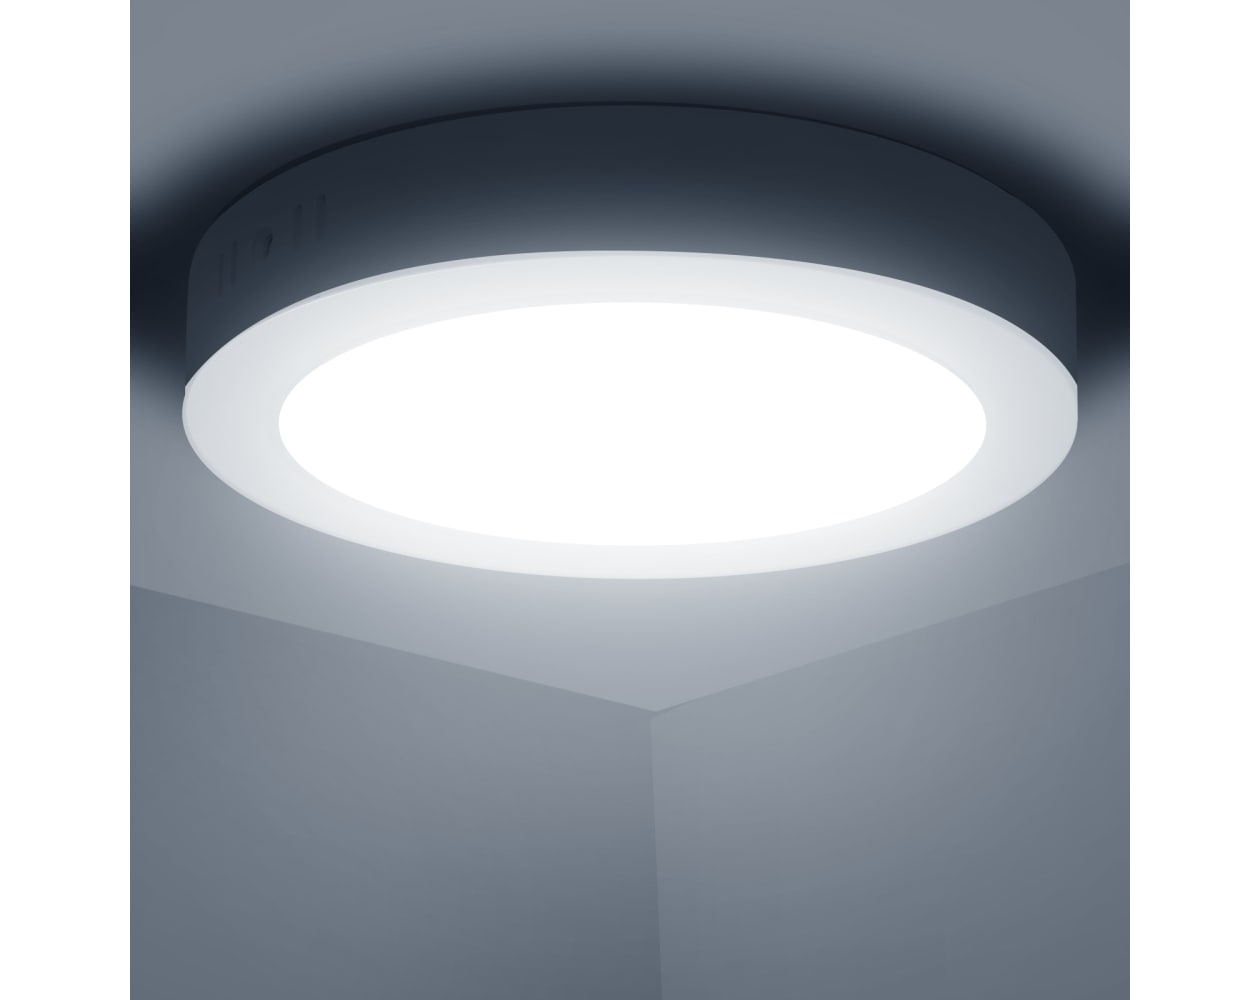 Plafon led para techo 22,5 diámetro 18w luz fría o calida - Alta